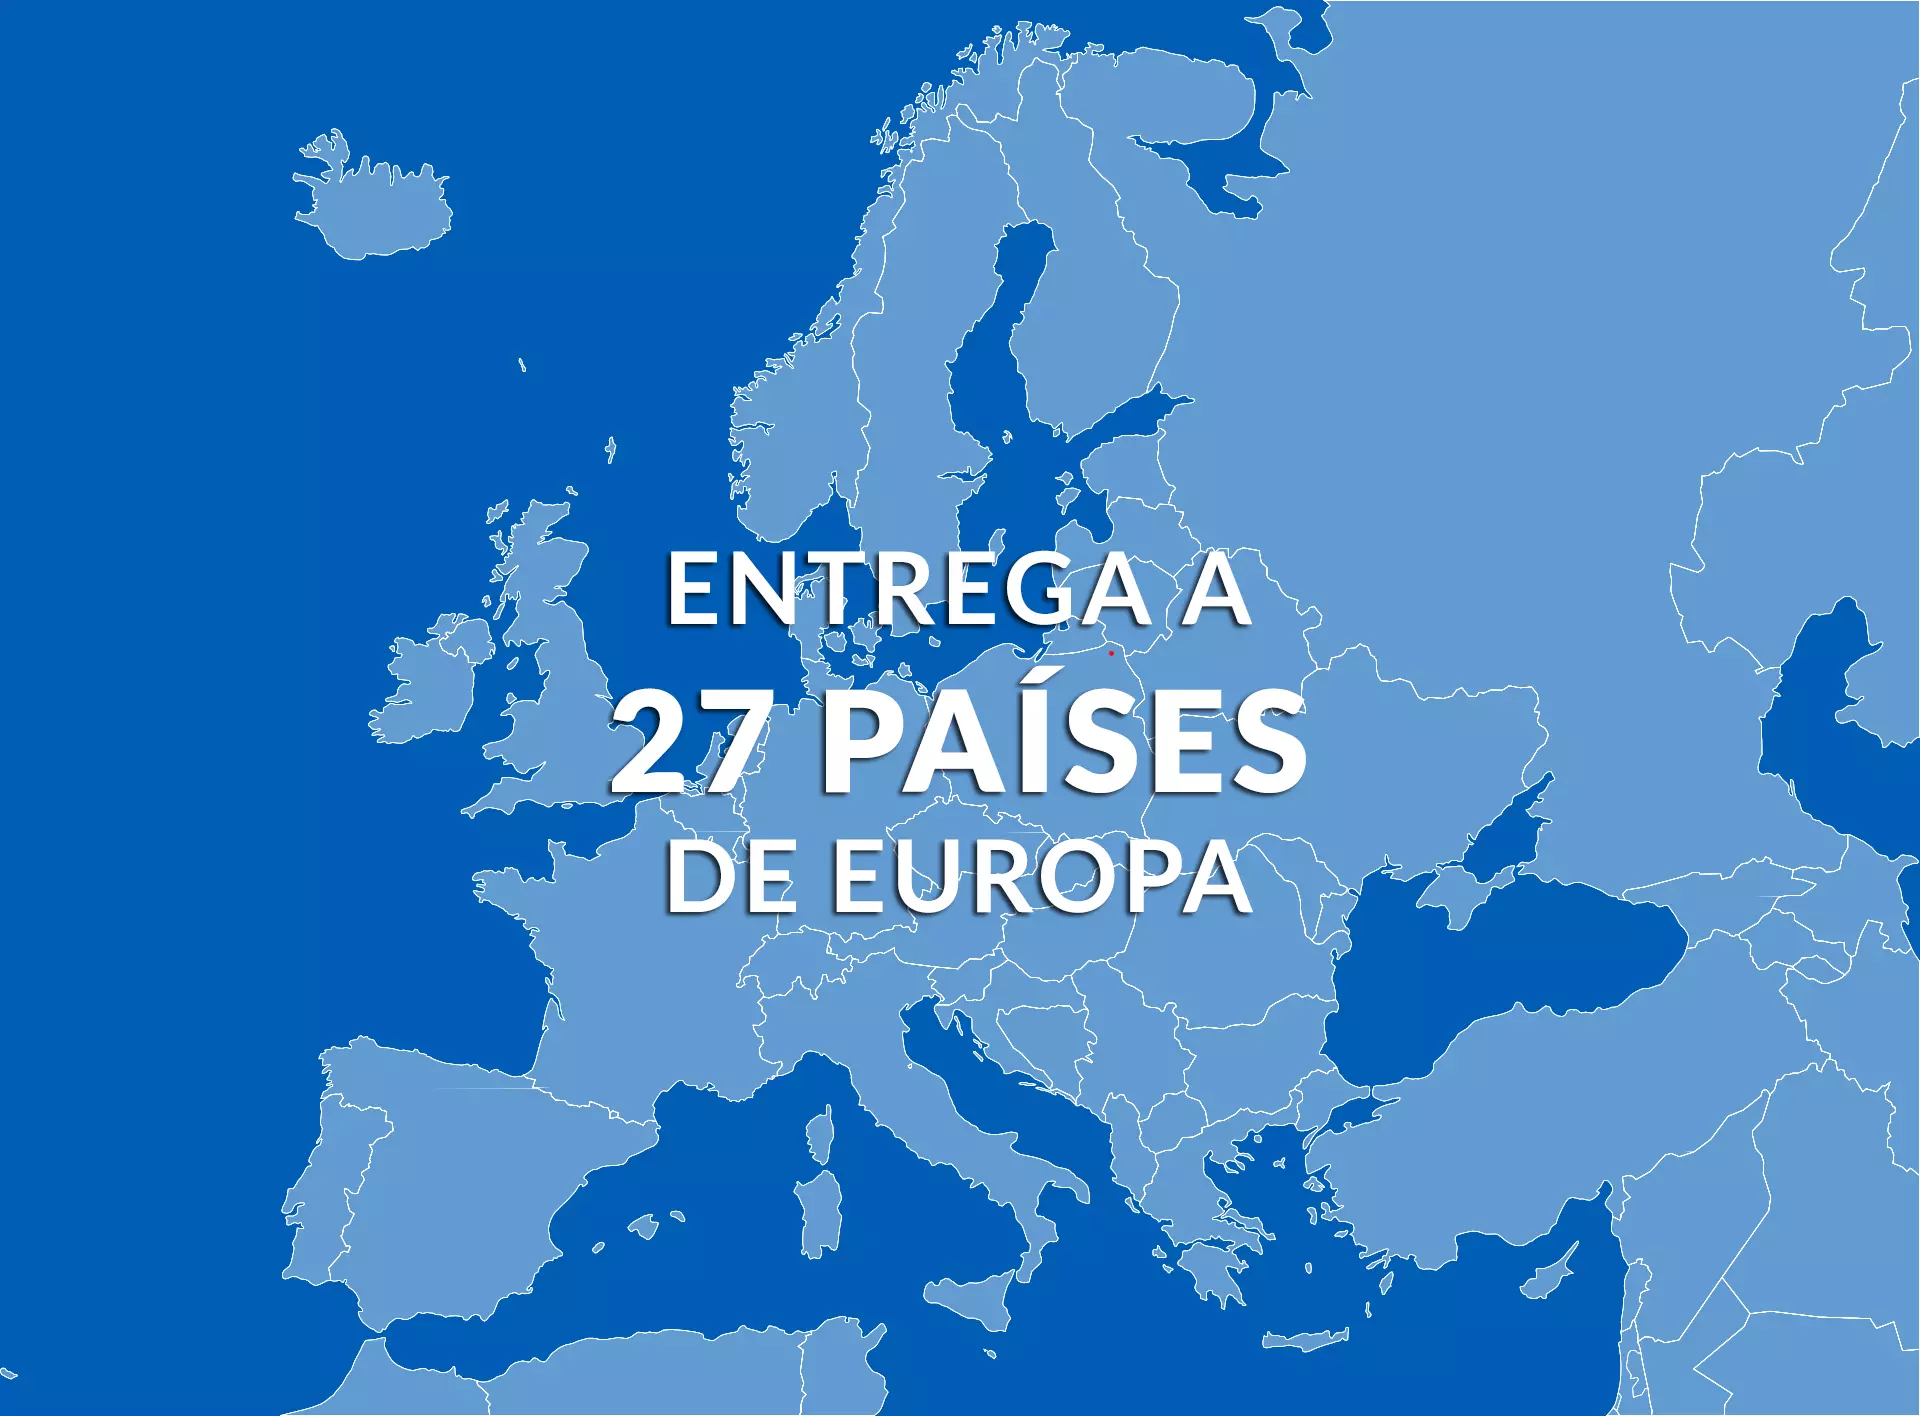 Entregamos llantas a 27 países europeos